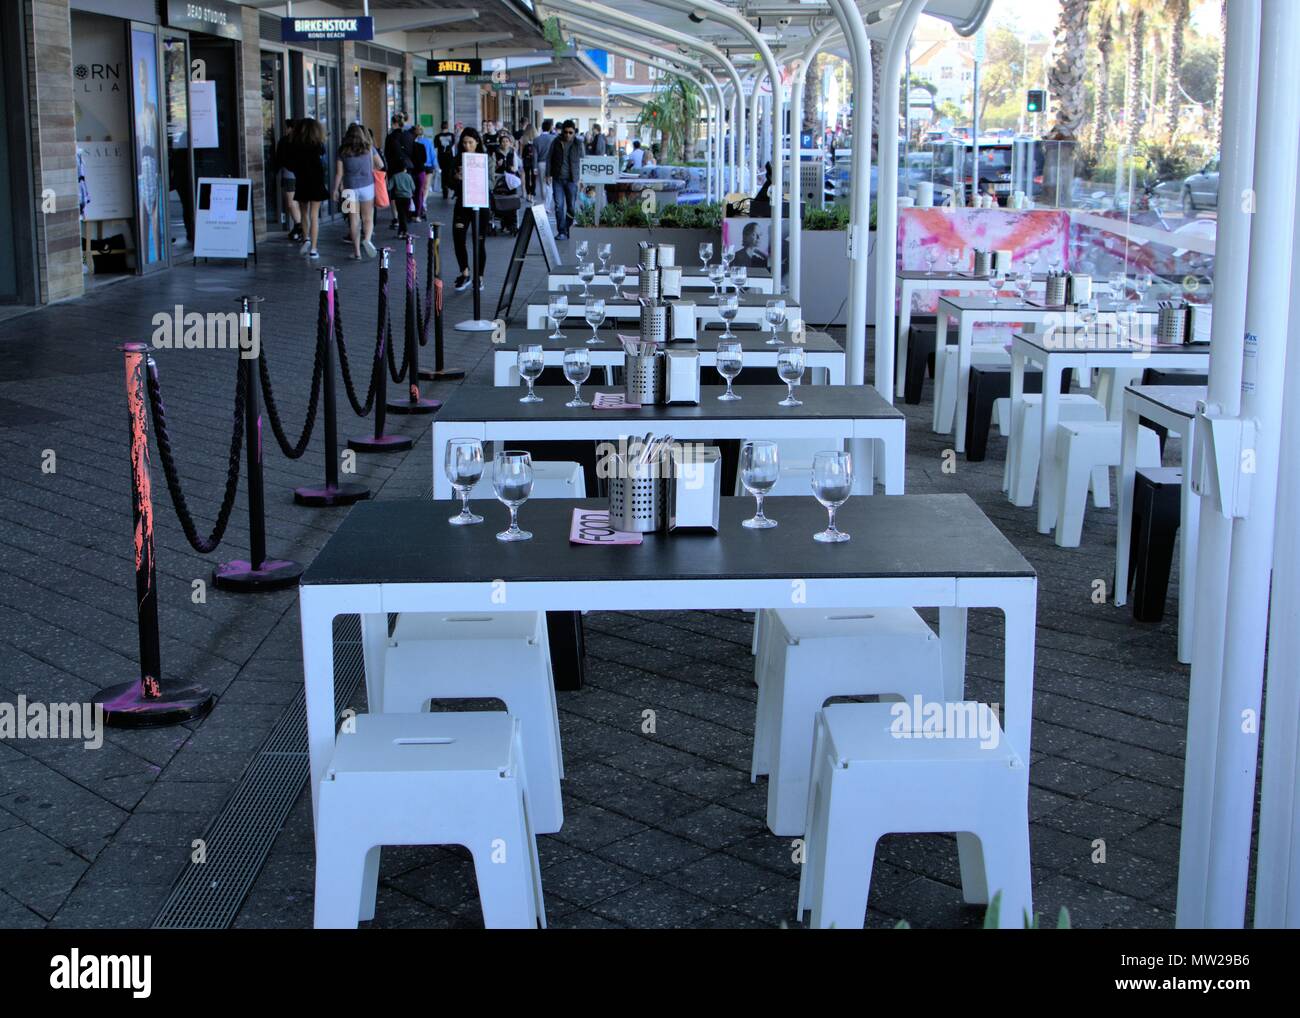 Restaurant im Freien am Bondi, Sydney Australien. Leere Stühle und Tische von Restaurant auf dem Bürgersteig in der australischen Stadt Stockfoto